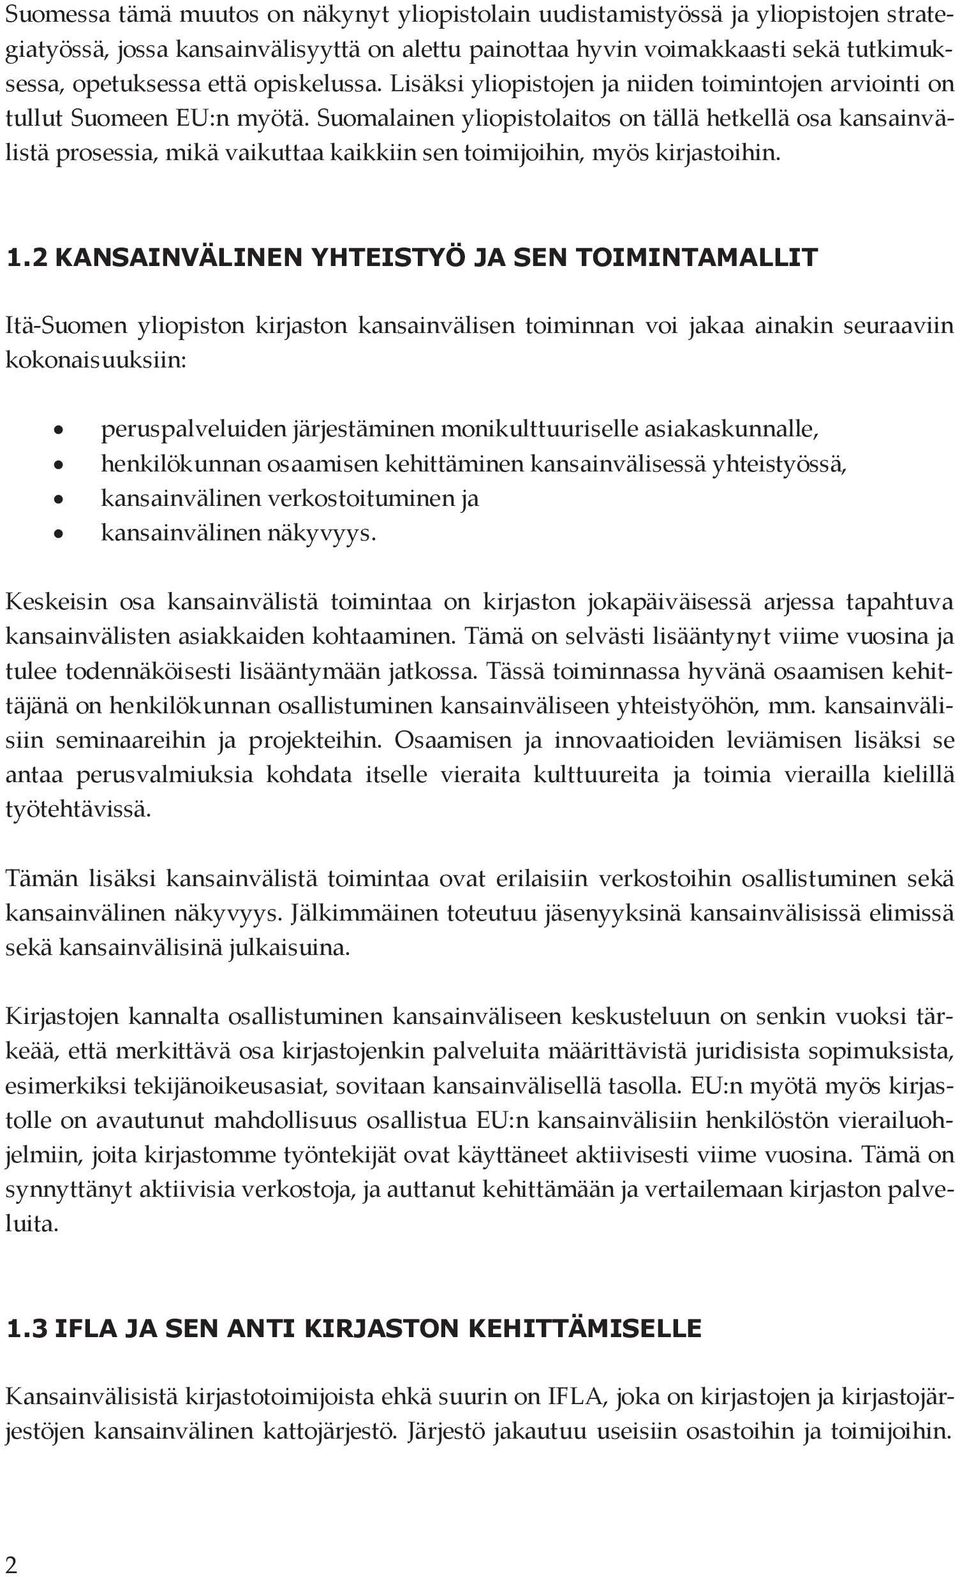 Suomalainen yliopistolaitos on tällä hetkellä osa kansainvälistä prosessia, mikä vaikuttaa kaikkiin sen toimijoihin, myös kirjastoihin. 1.